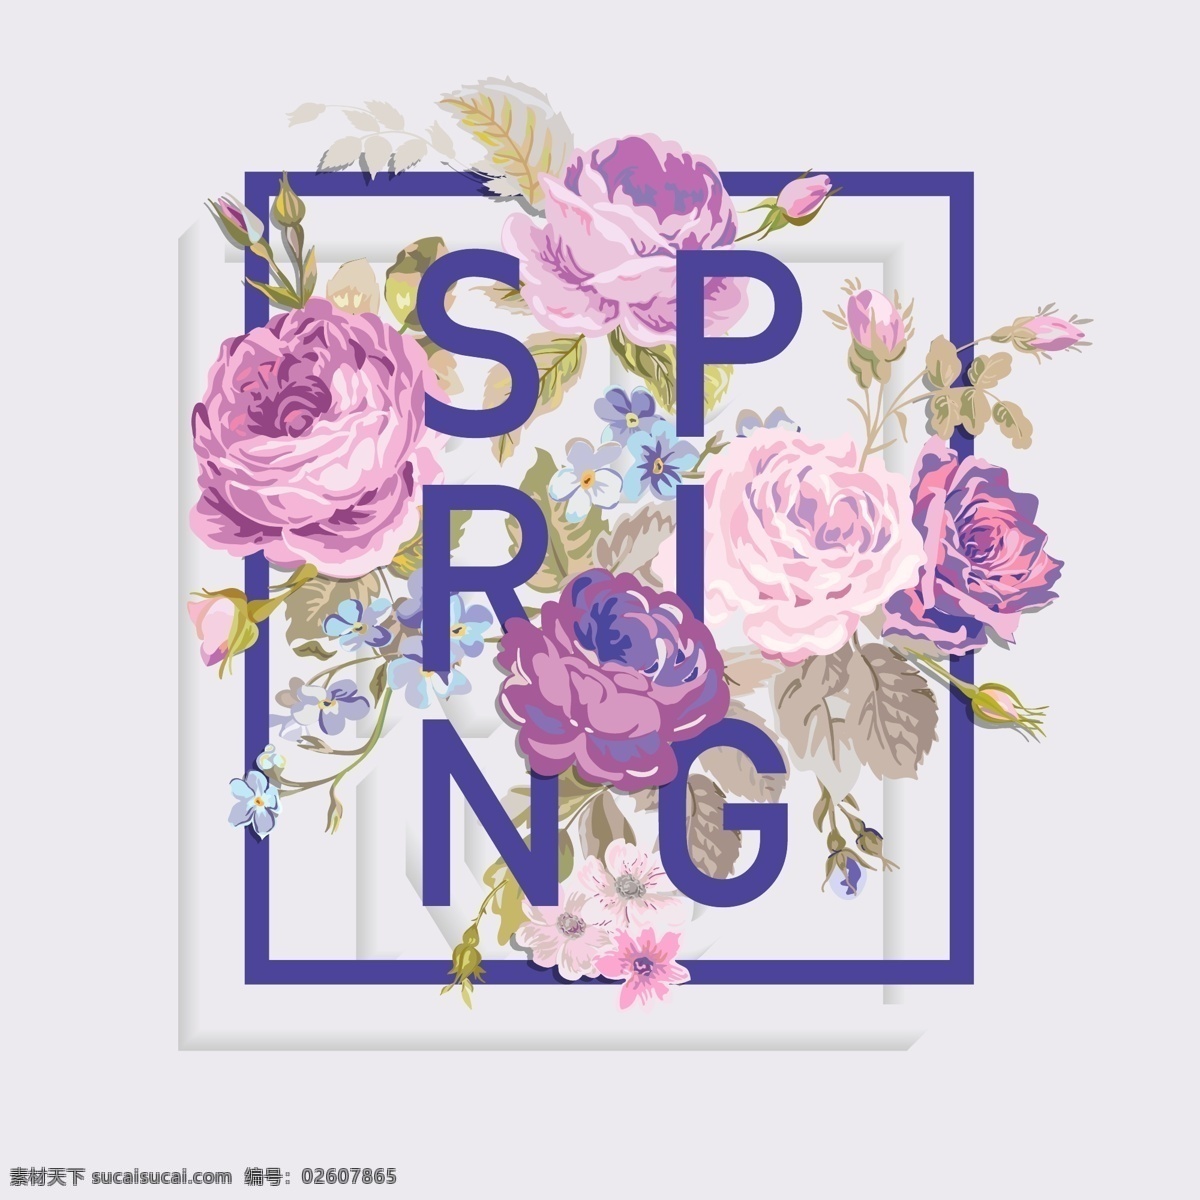 紫色 小 清新 春夏 花卉 海报 矢量 花朵 春天 合成字体 创意 穿插 小清新 卡通 填充 插画 背景 广告 包装 印刷 夏天